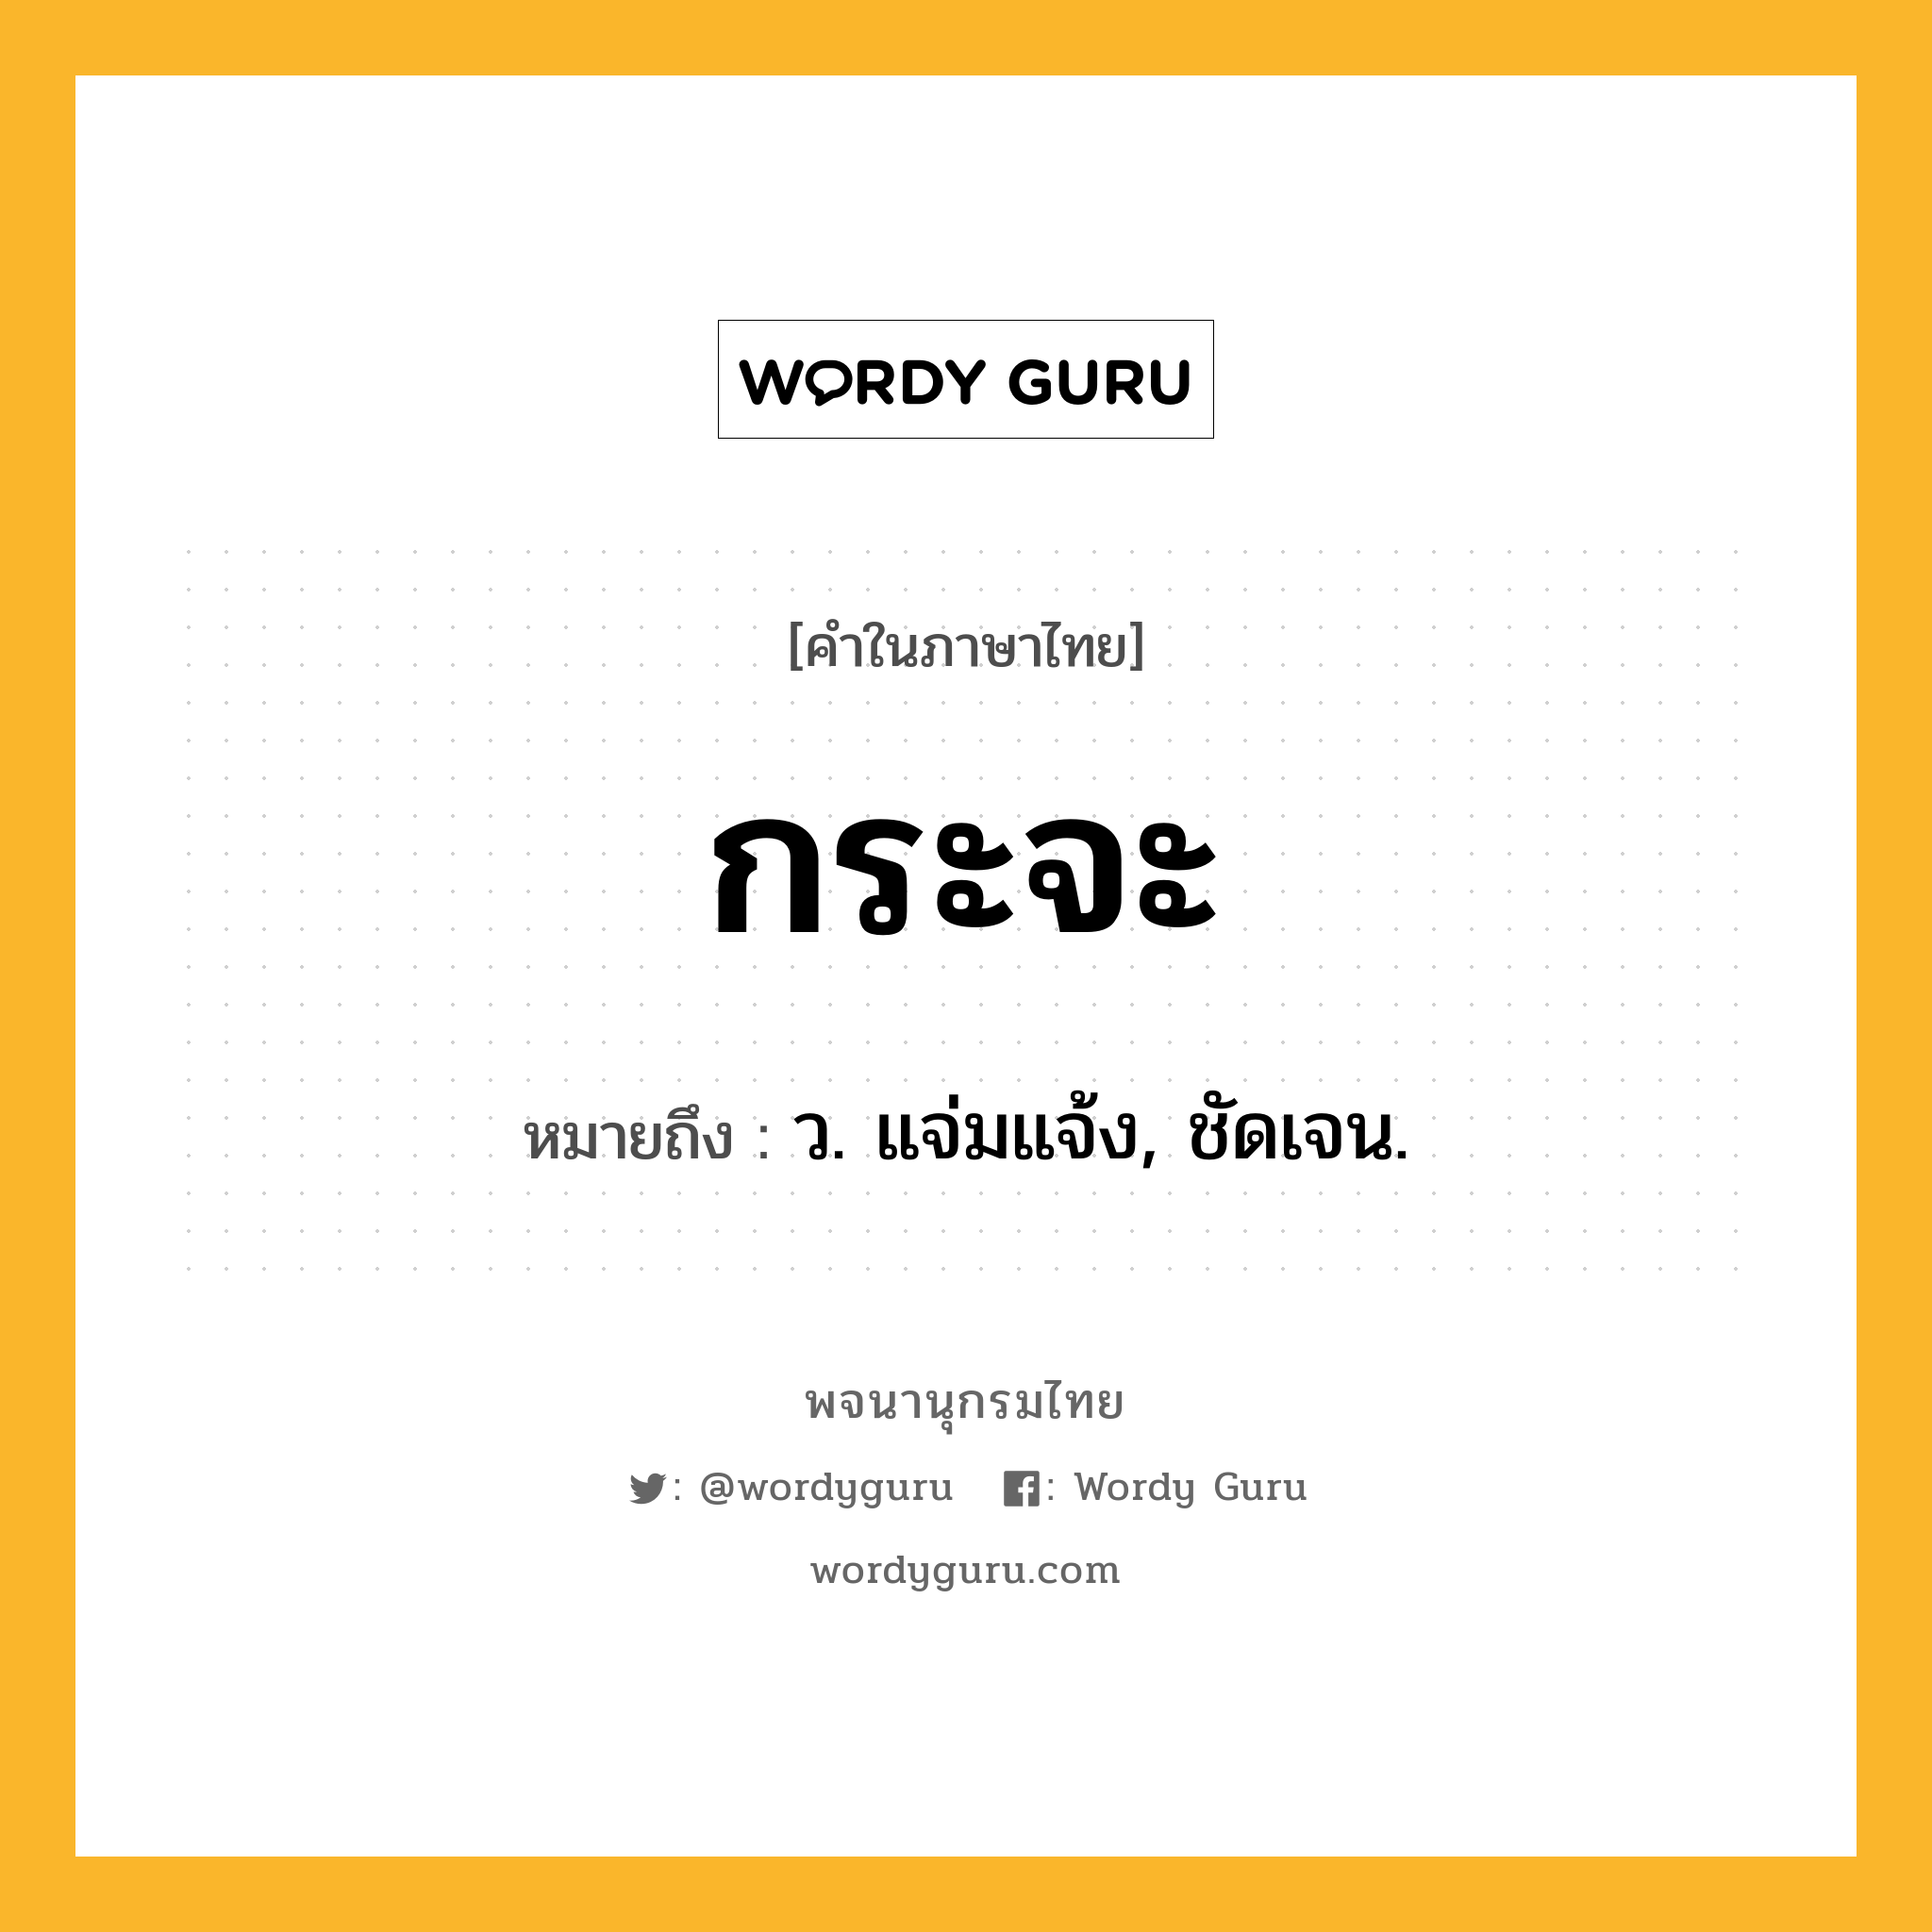 กระจะ หมายถึงอะไร?, คำในภาษาไทย กระจะ หมายถึง ว. แจ่มแจ้ง, ชัดเจน.